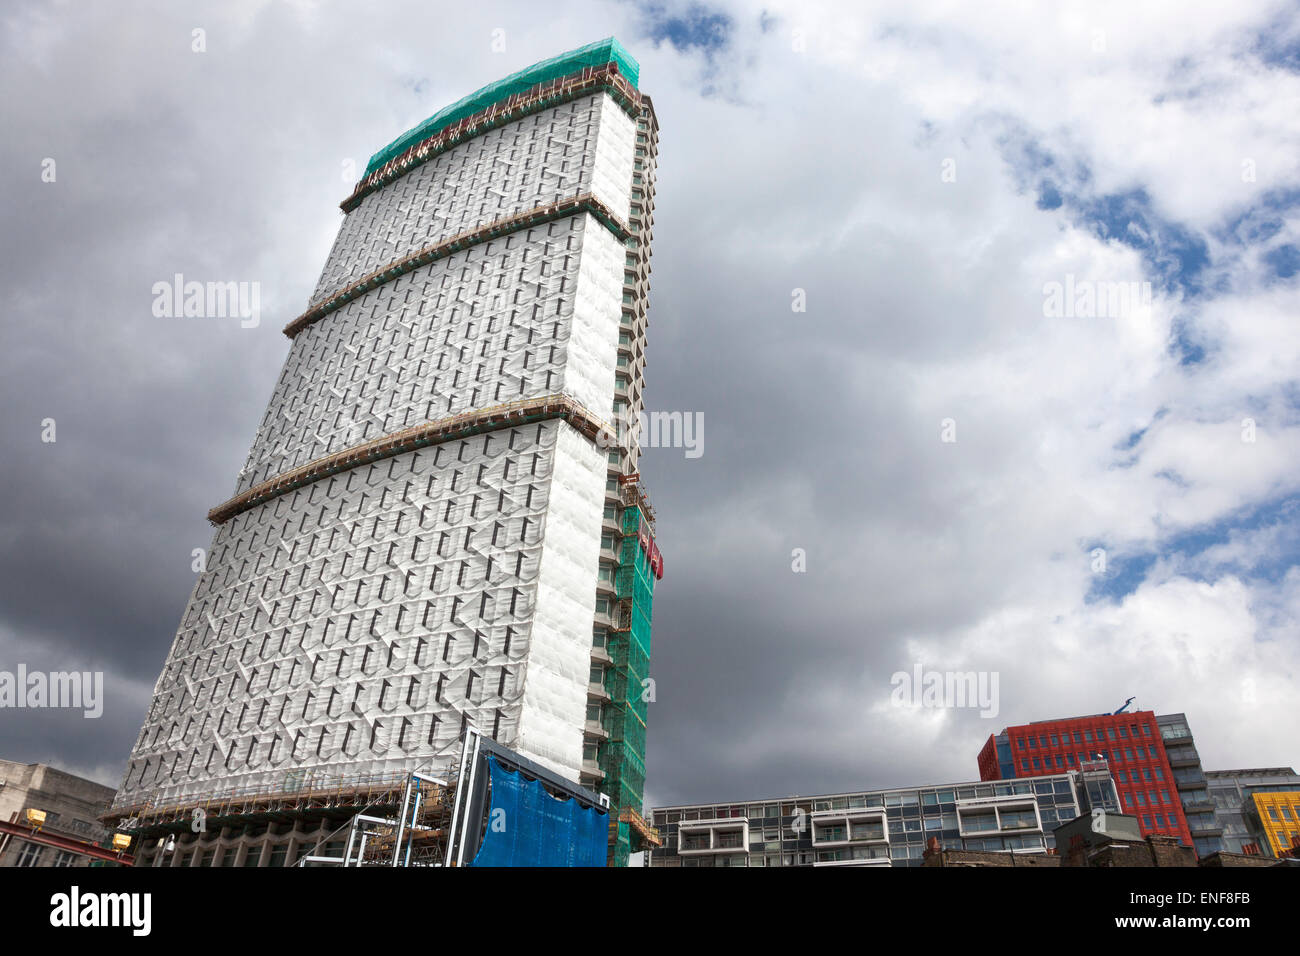 25 avril 2015 - Point central est en cours de transformation en appartements de luxe Banque D'Images